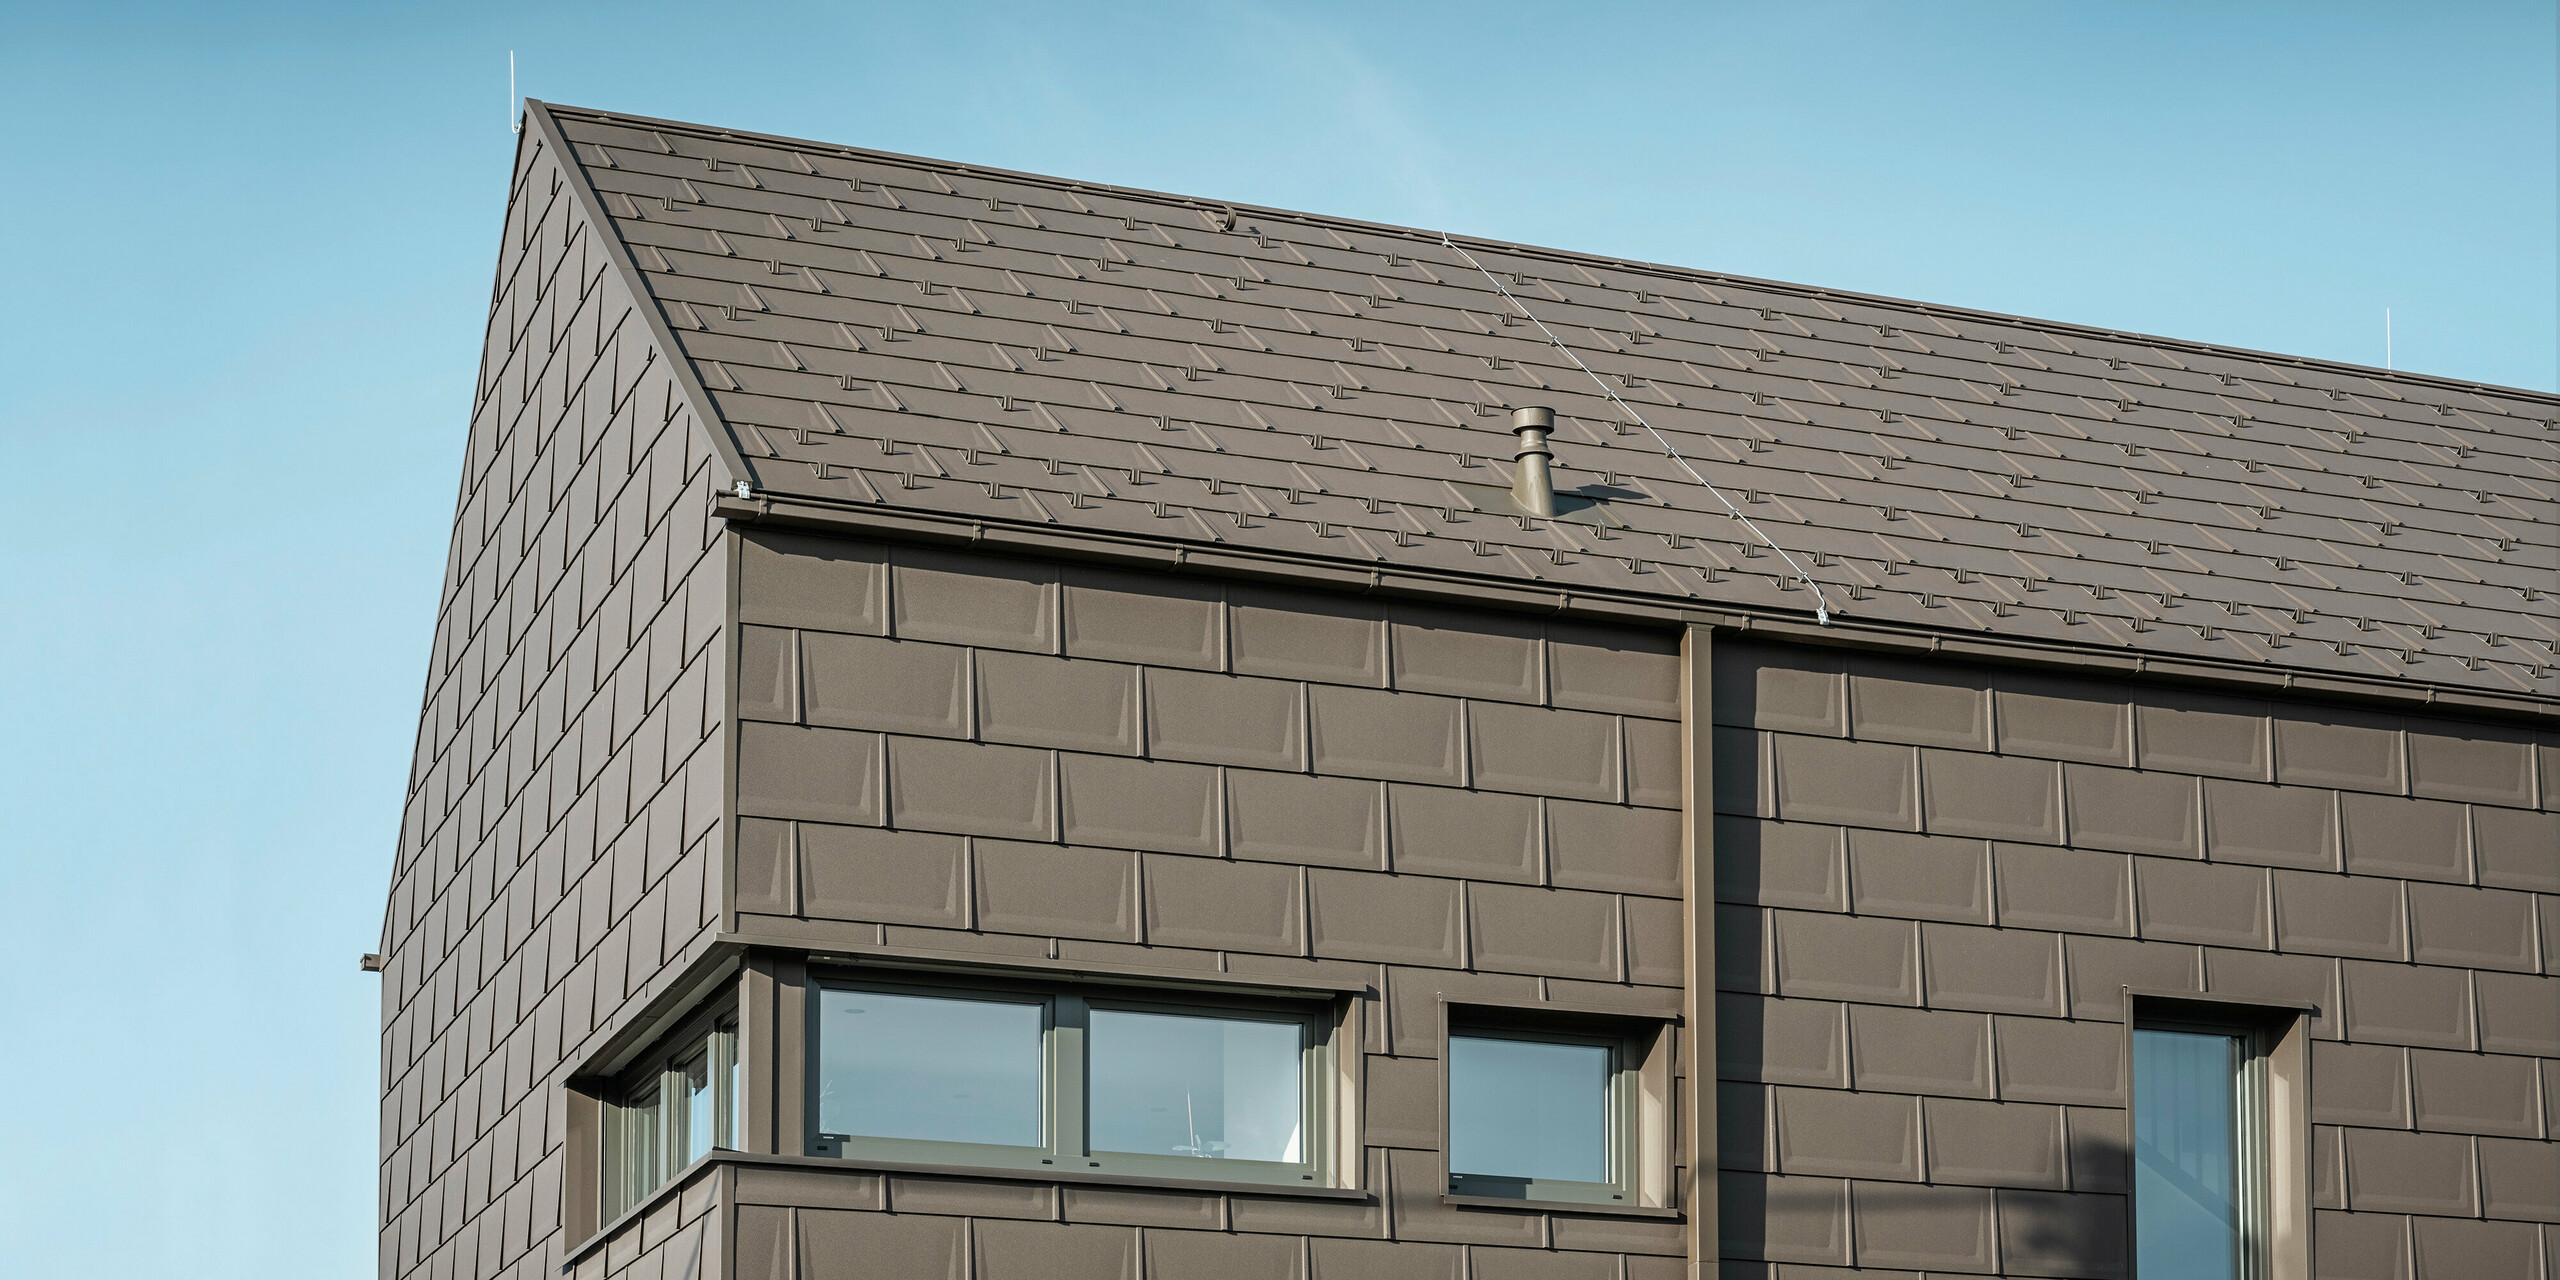 Detailaufnahme eines Einfamilienhauses in Neukirchen, Österreich, mit einer Dach- und Fassadenverkleidung aus PREFA R.16 Dachplatten in P.10 braun. Die präzise Überlappung der Platten sorgt für ein einheitliches und ansprechendes Erscheinungsbild, das moderne Ästhetik mit Funktionalität verbindet. Die integrierte PREFA Dachentwässerung in Form einer Kastenrinne und eines Vierkantrohrs in P.10 Braun zeigt das Engagement von PREFA für hochwertige und optisch ansprechende Bauelemente.